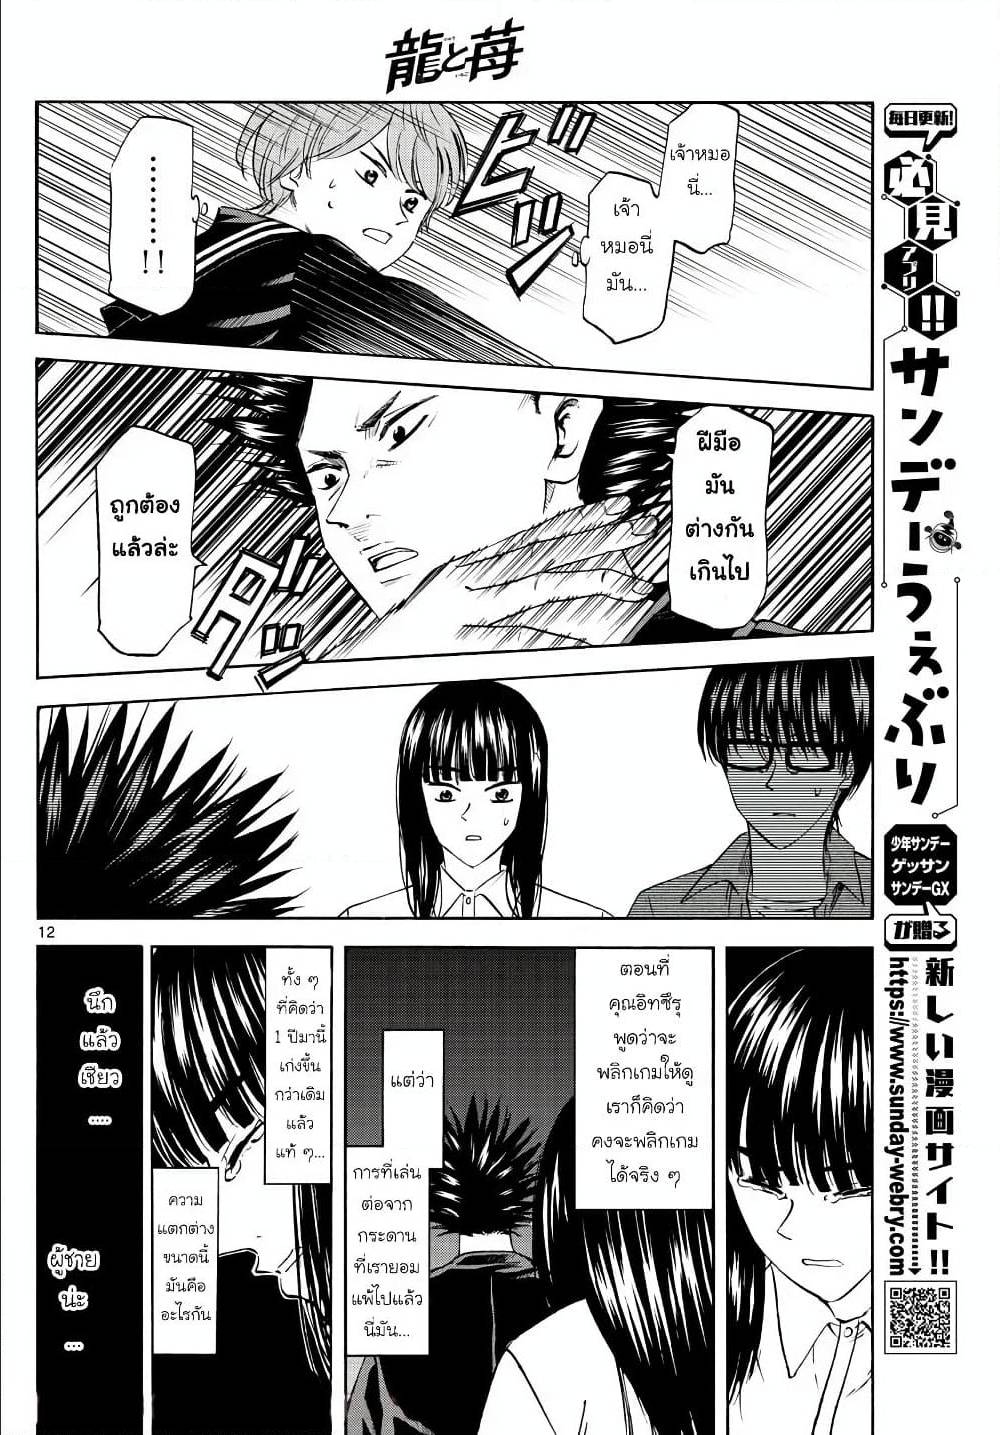 Ryuu to Ichigo 7 (12)